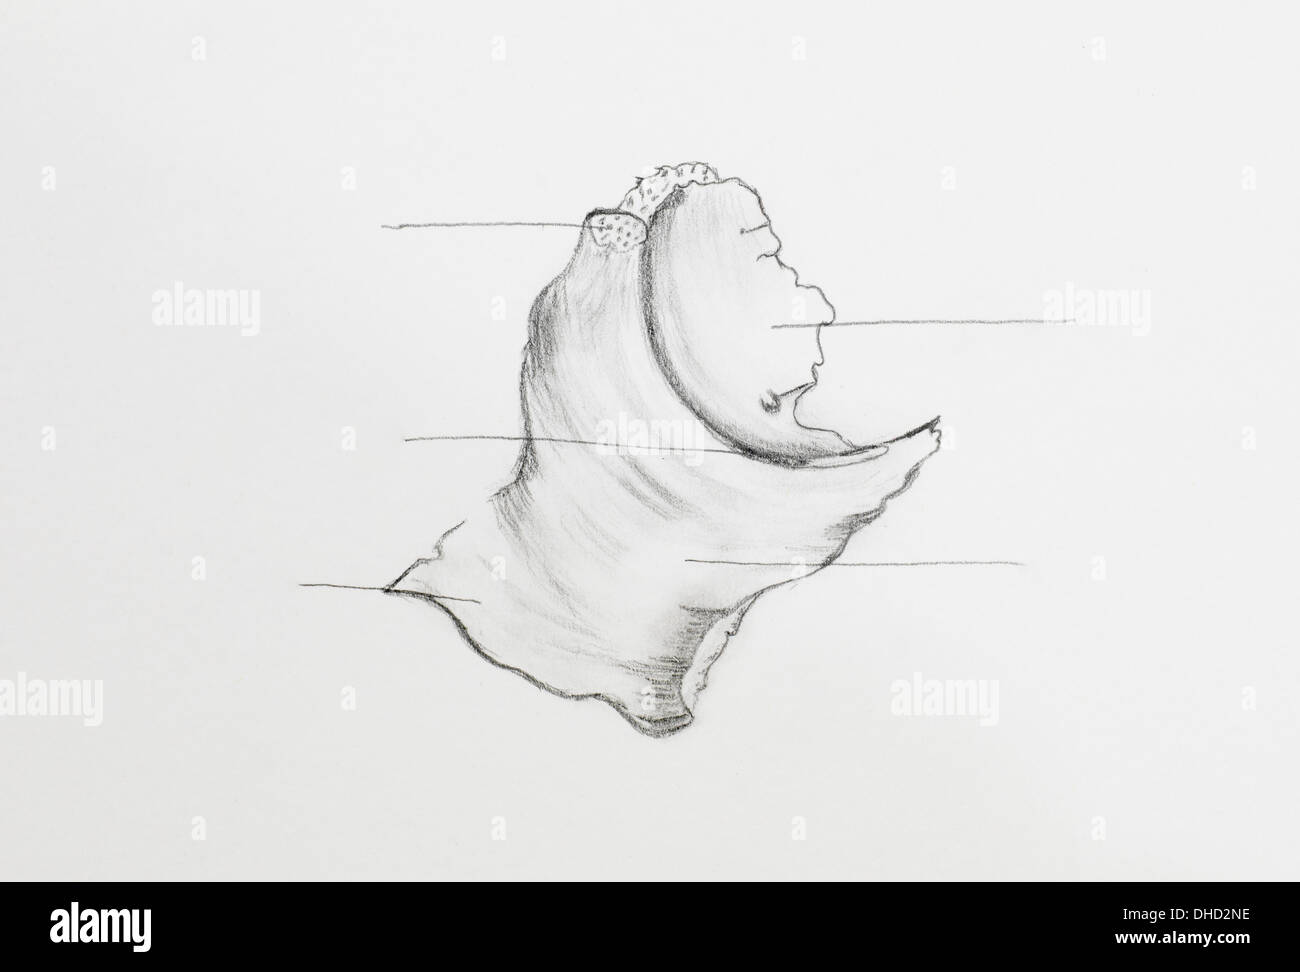 Dettaglio di osso zigomatico disegno a matita su carta bianca Foto Stock